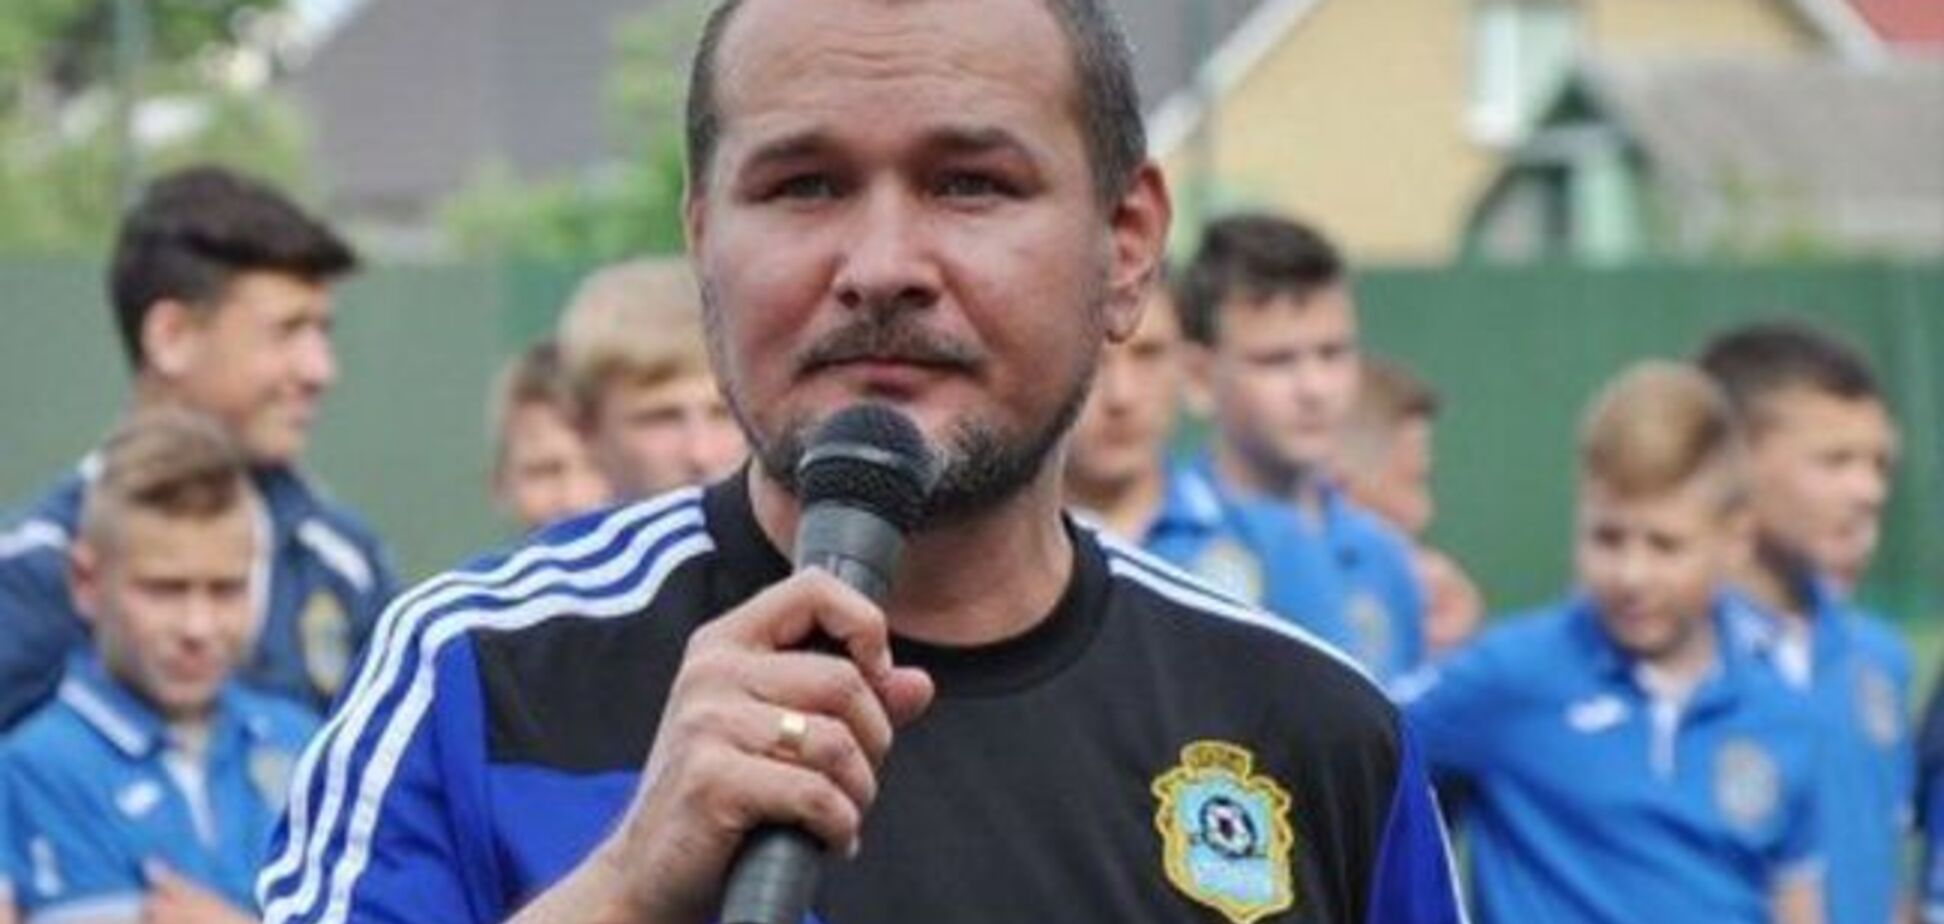 Умер выдающийся украинский спортивный журналист